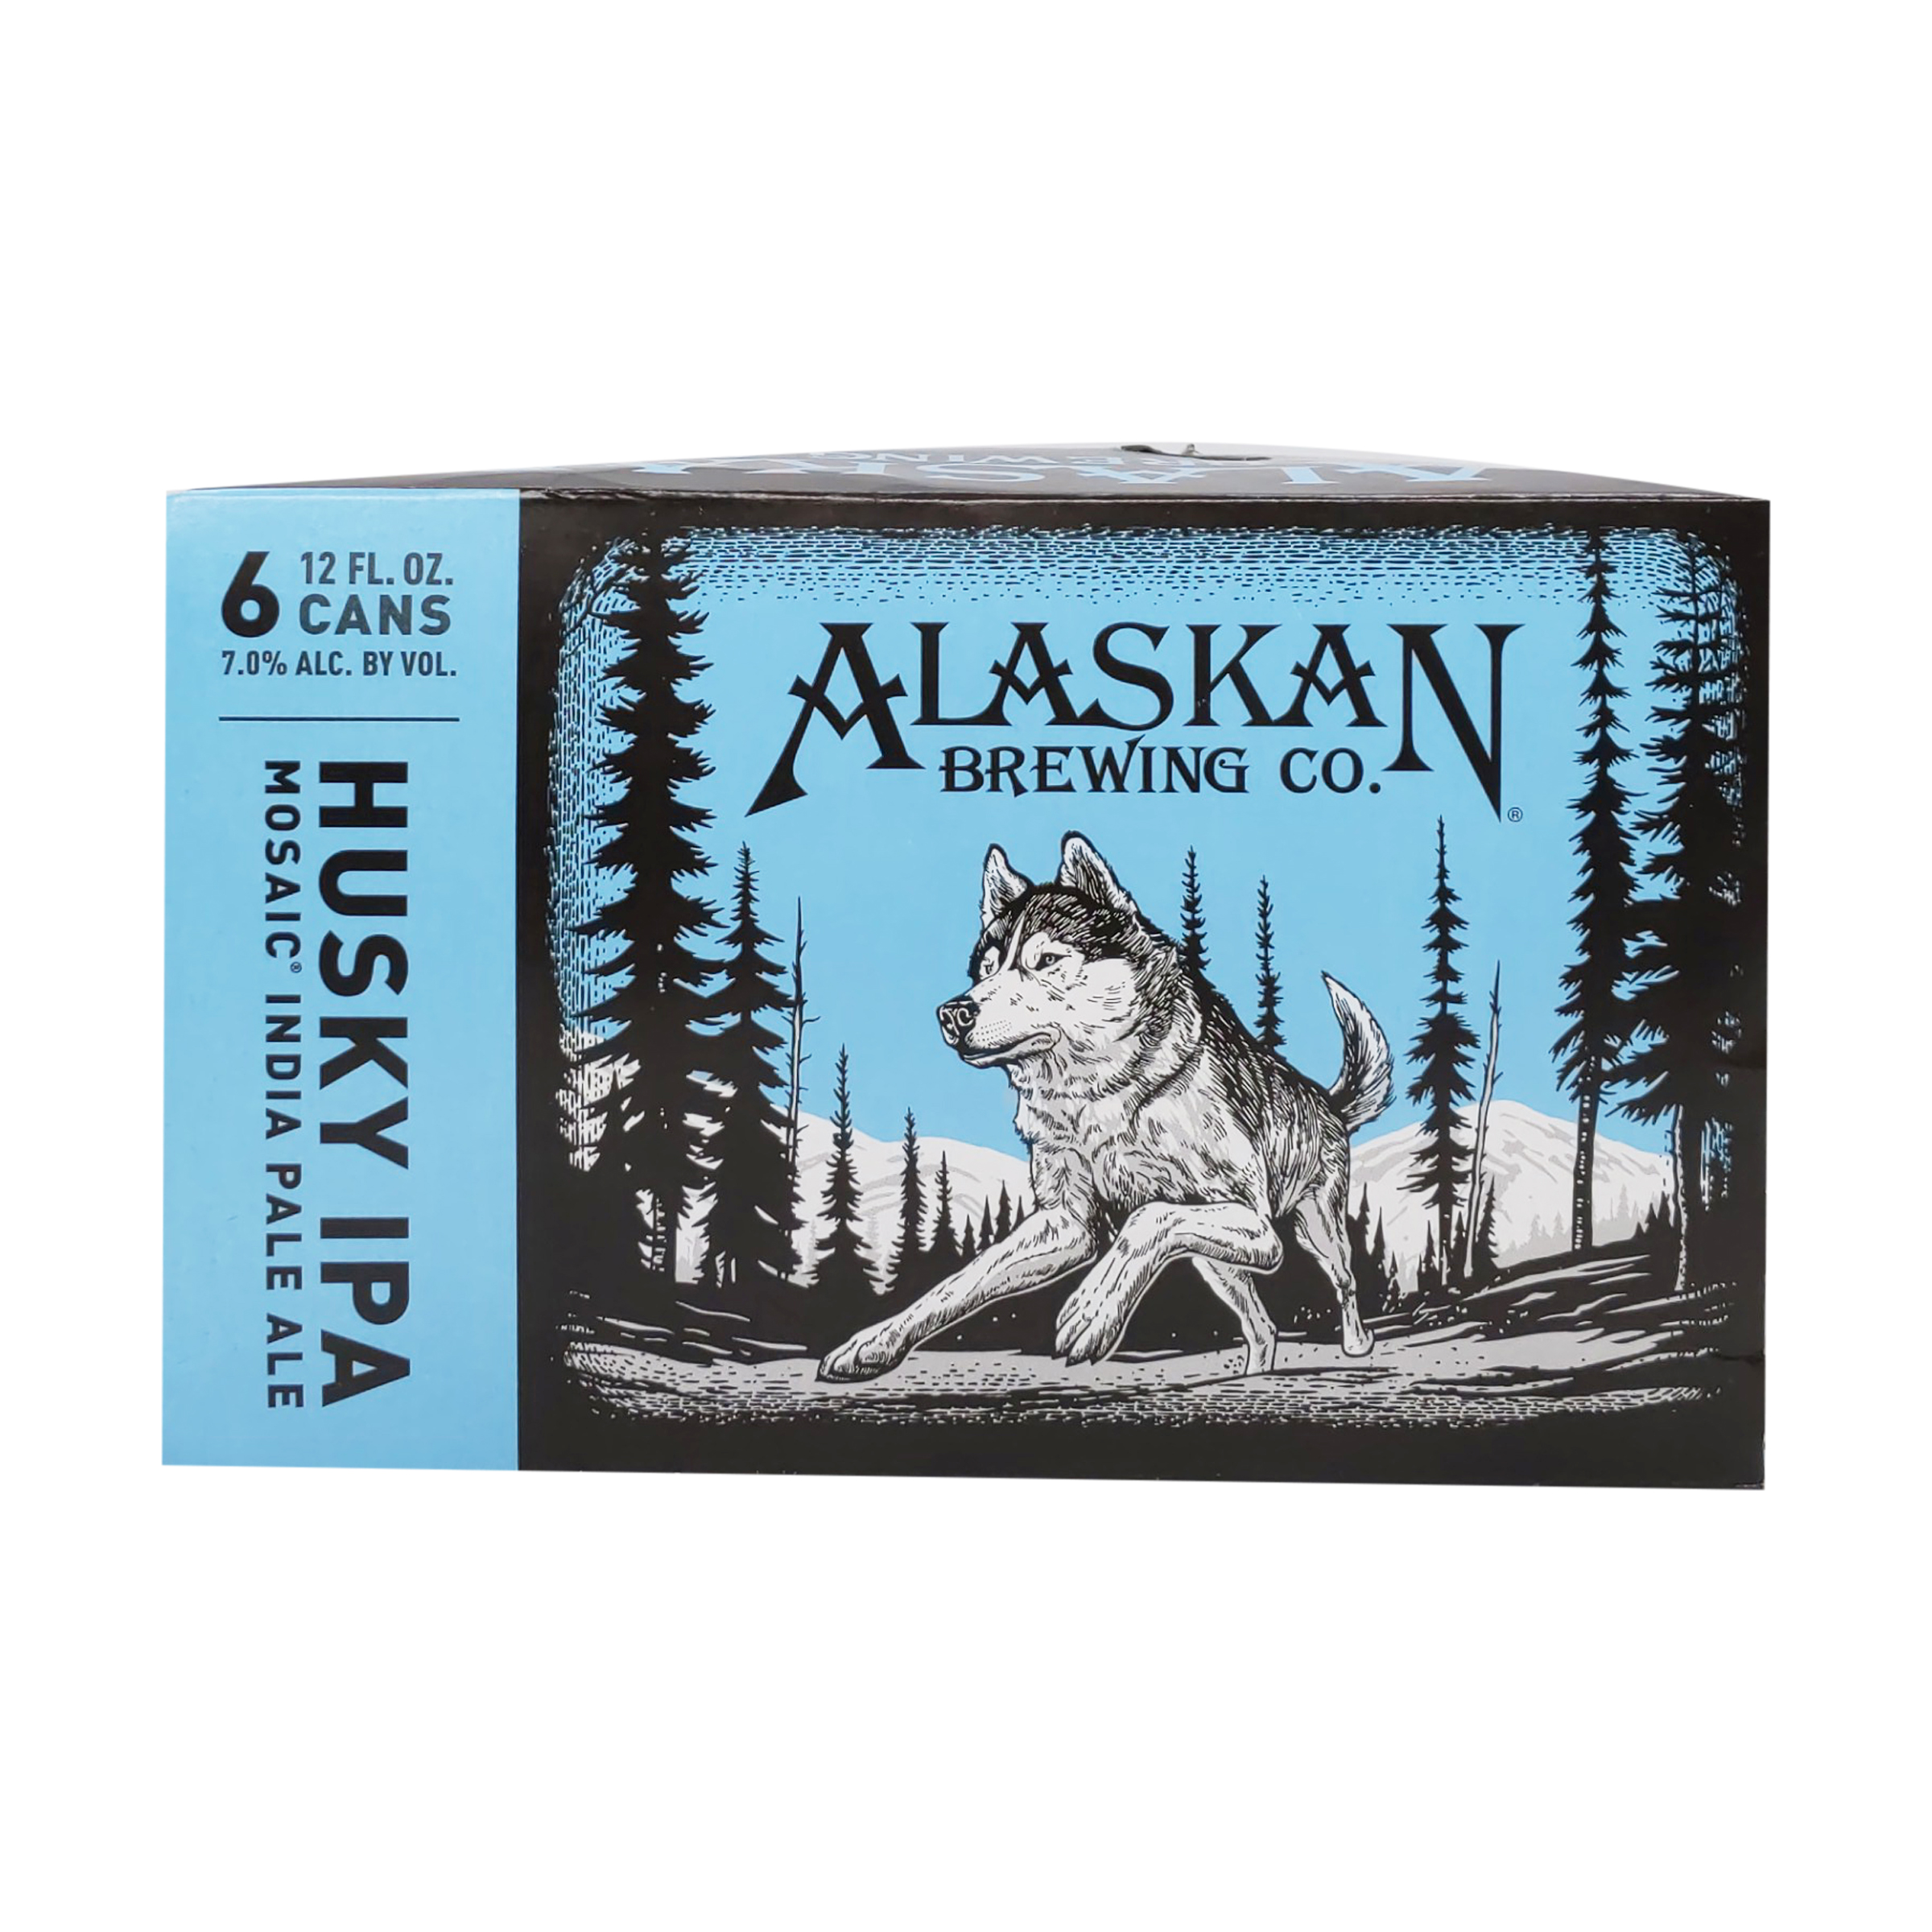 images/beer/IPA BEER/Alaskan Husky IPa .jpg